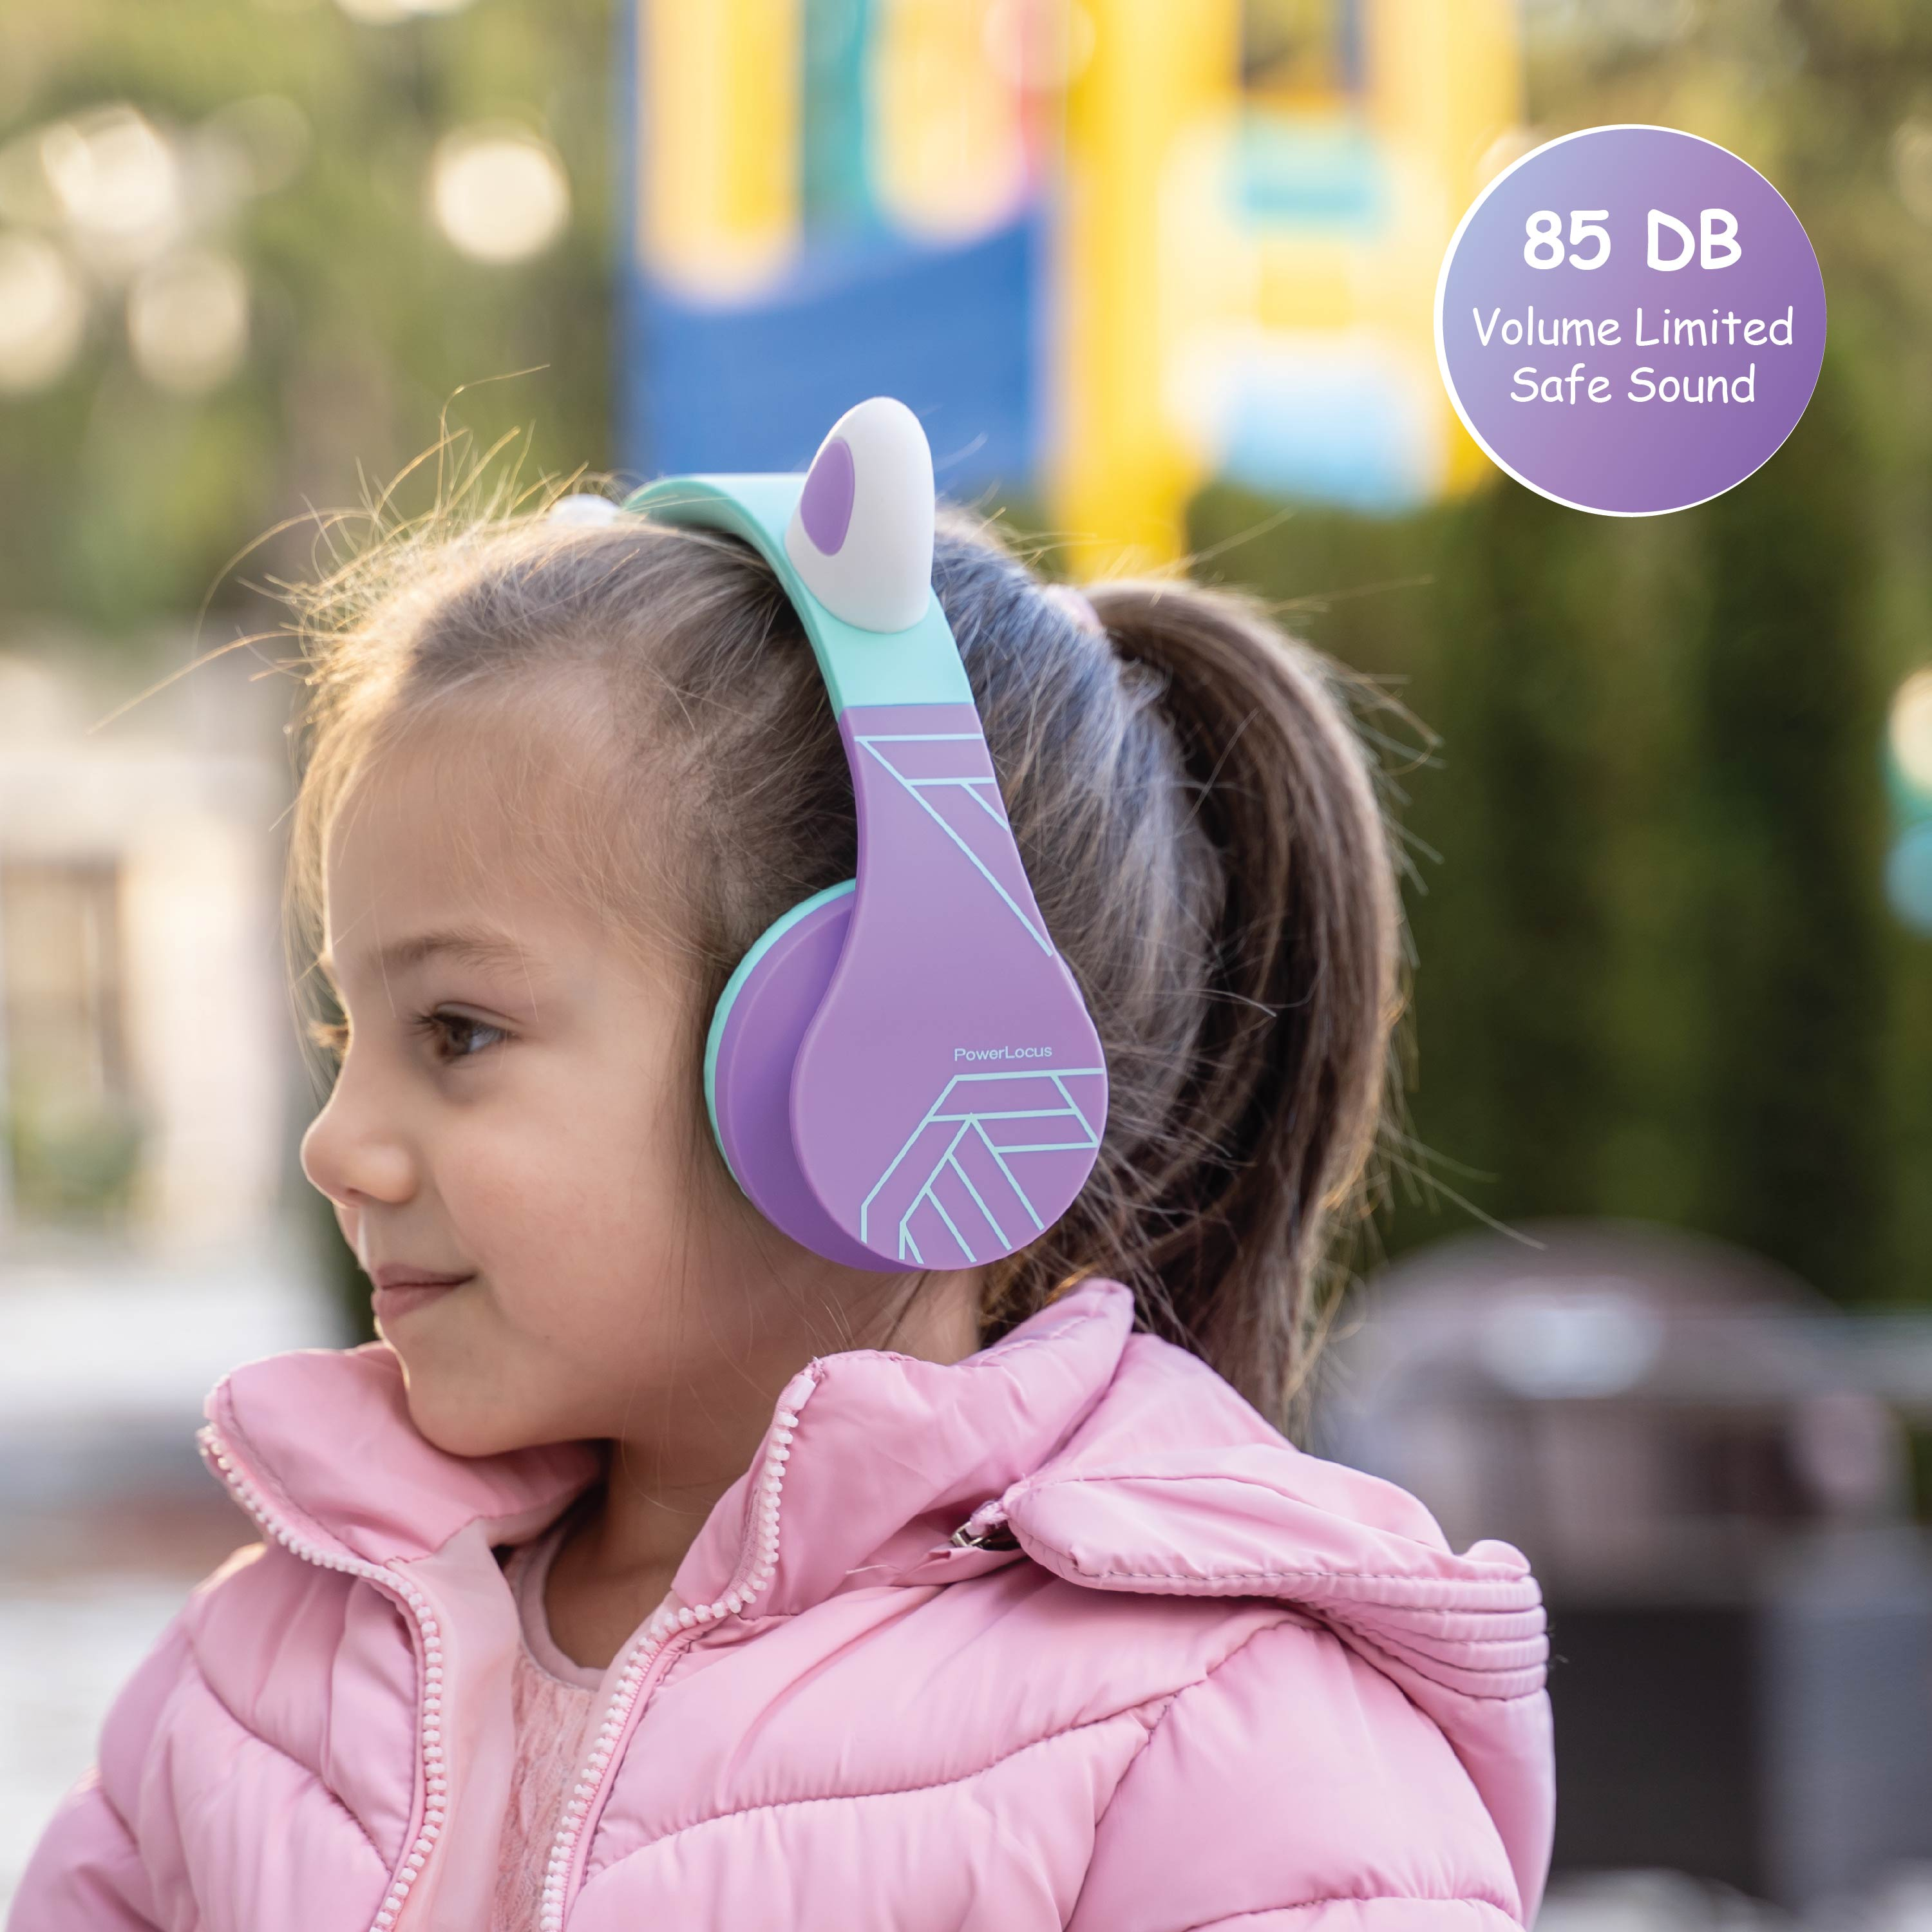 POWERLOCUS P1 Kopfhörer Kinder, Teal/Lila Bluetooth für Over-ear